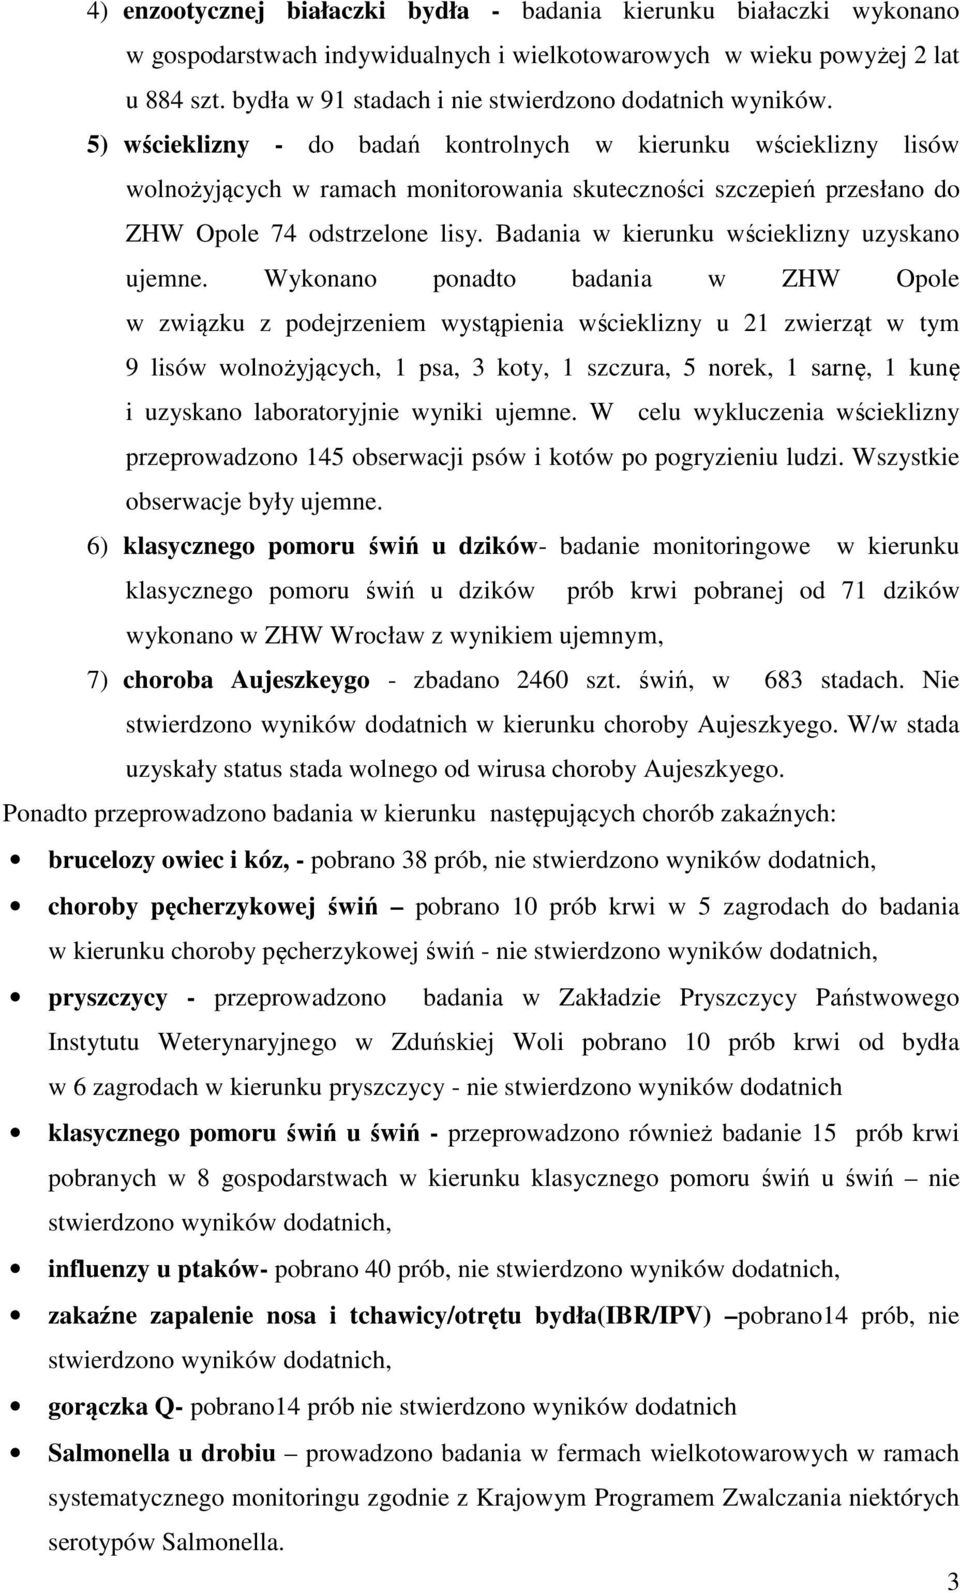 5) wścieklizny - do badań kontrolnych w kierunku wścieklizny lisów wolnożyjących w ramach monitorowania skuteczności szczepień przesłano do ZHW Opole 74 odstrzelone lisy.